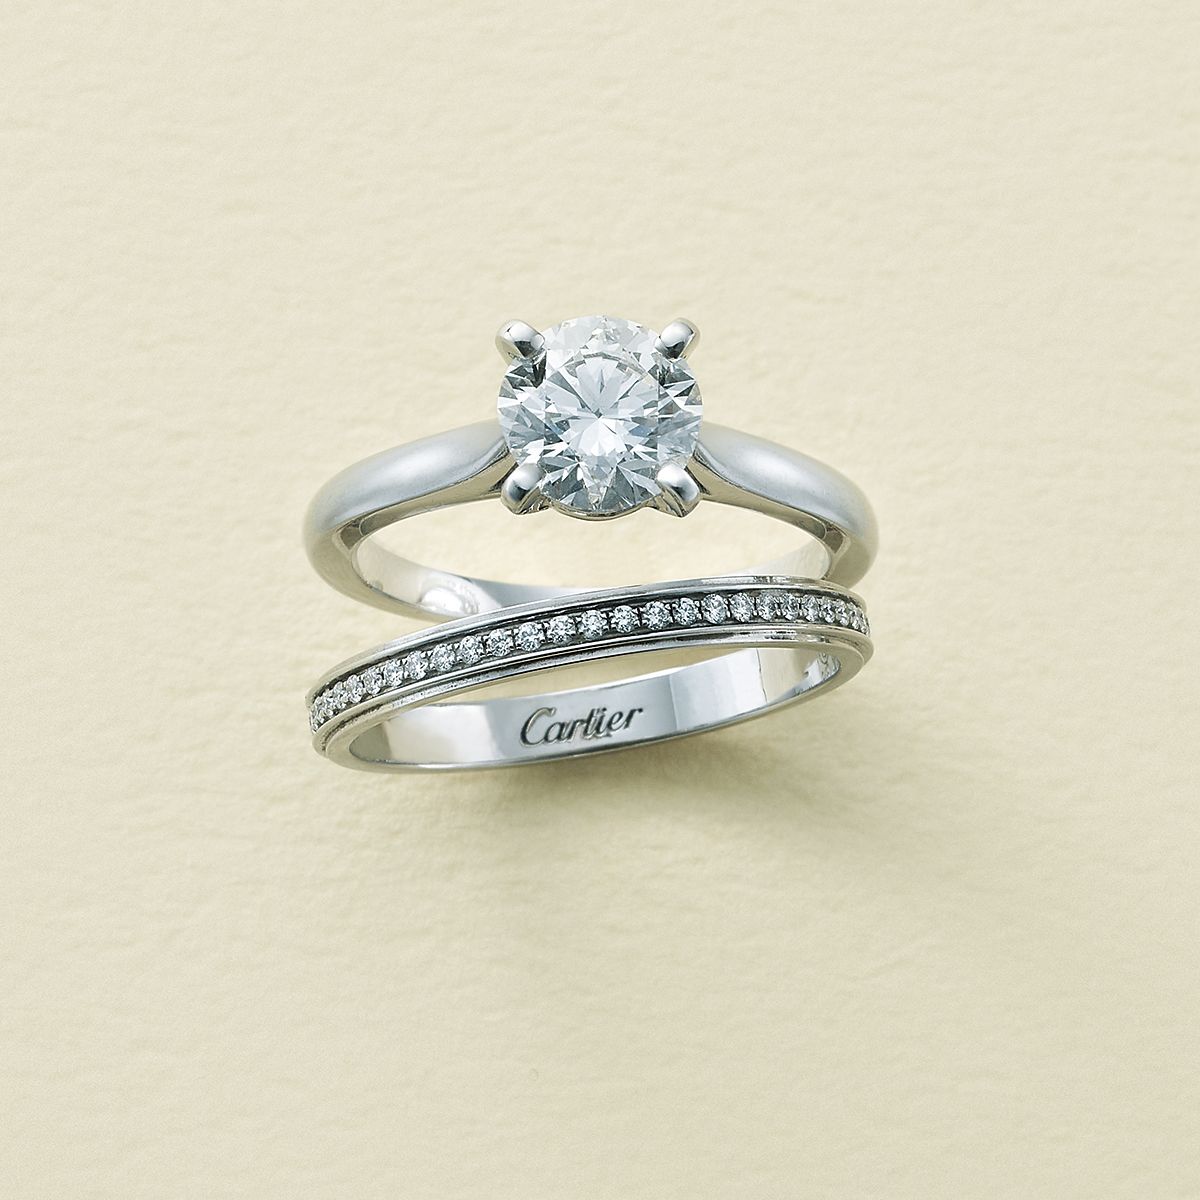 113135円 2022年のクリスマスの特別な衣装 カルティエ Cartier リング ダイヤ 指輪 ダイヤモンド 1895 ソリテール 婚約指輪